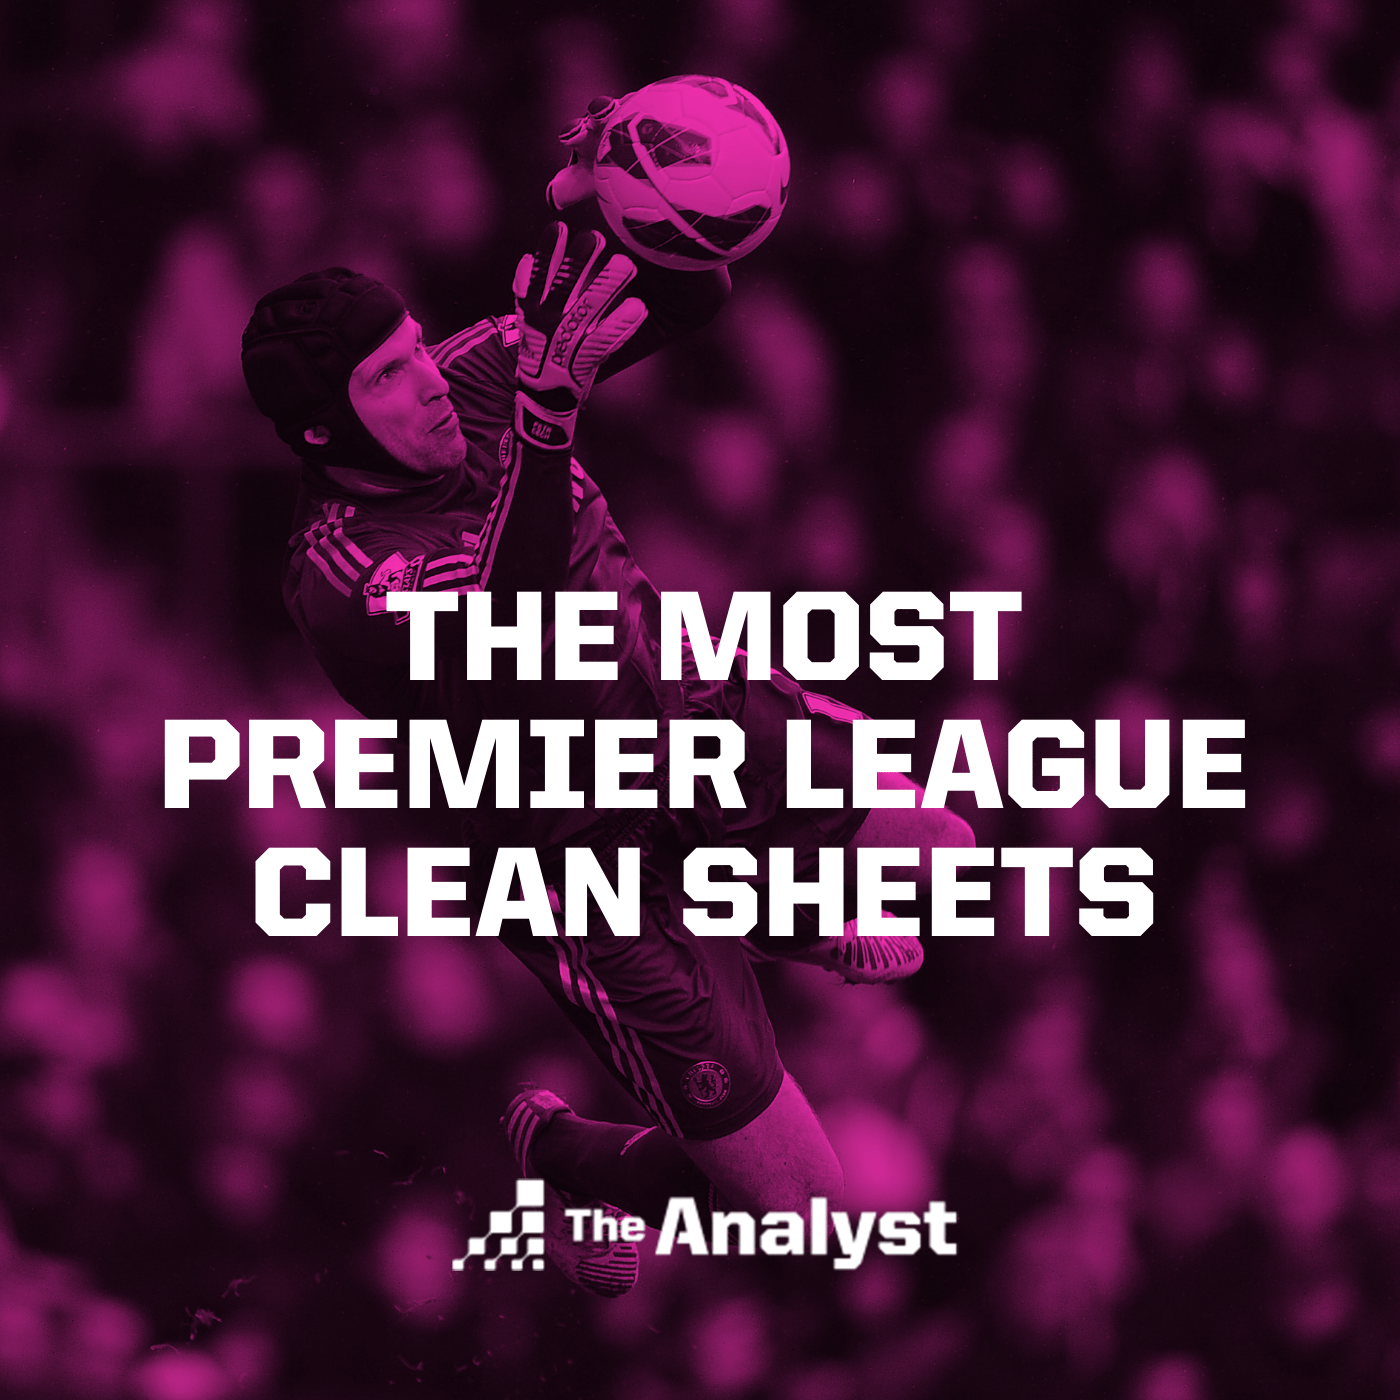 The Most Premier League Clean Sheets